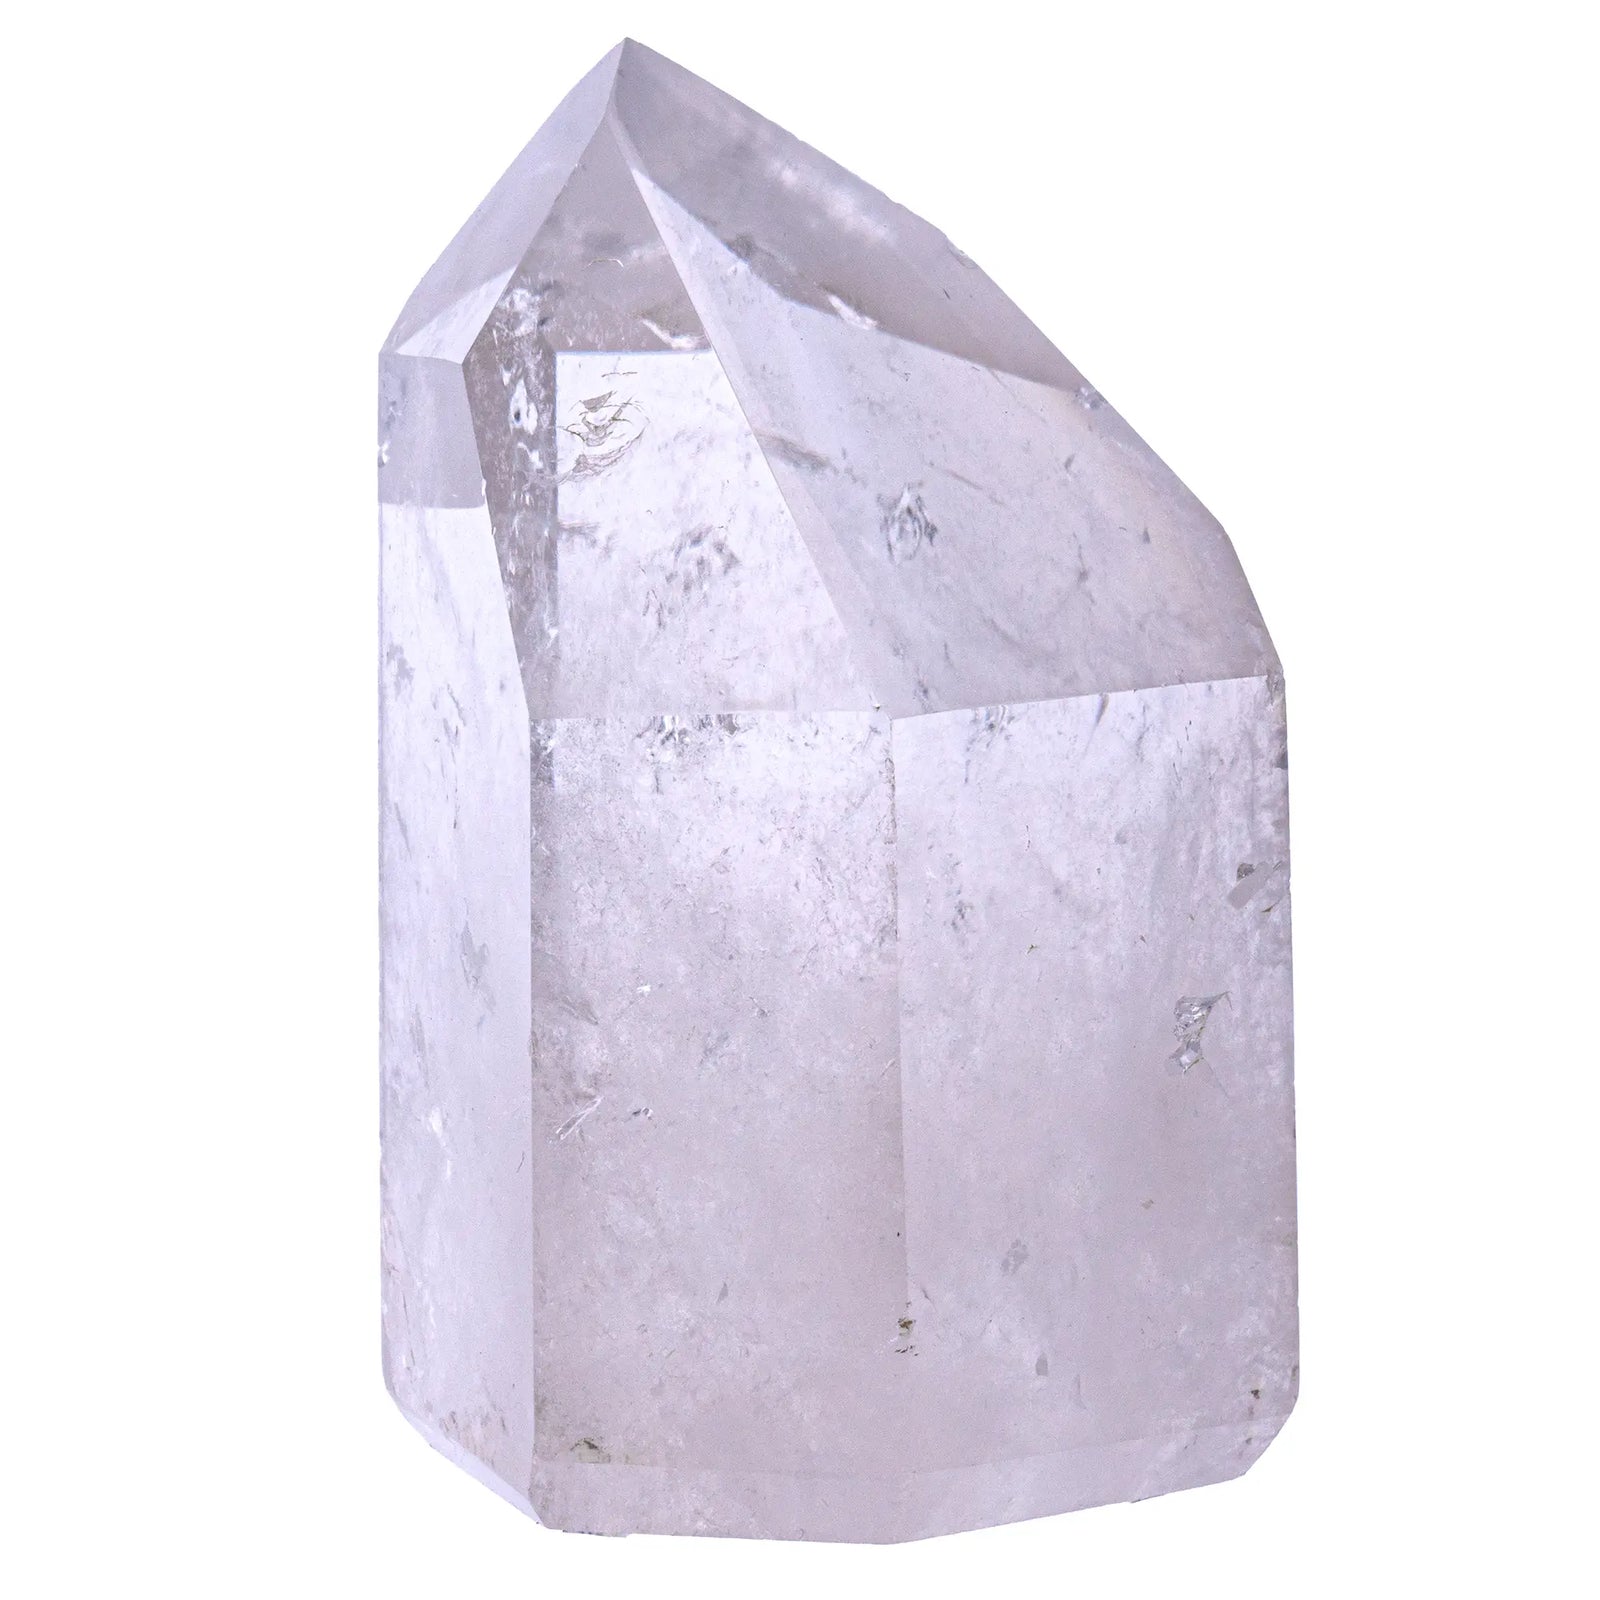 Cristal de roche - cristal poli  - CRISTAL SOURCES